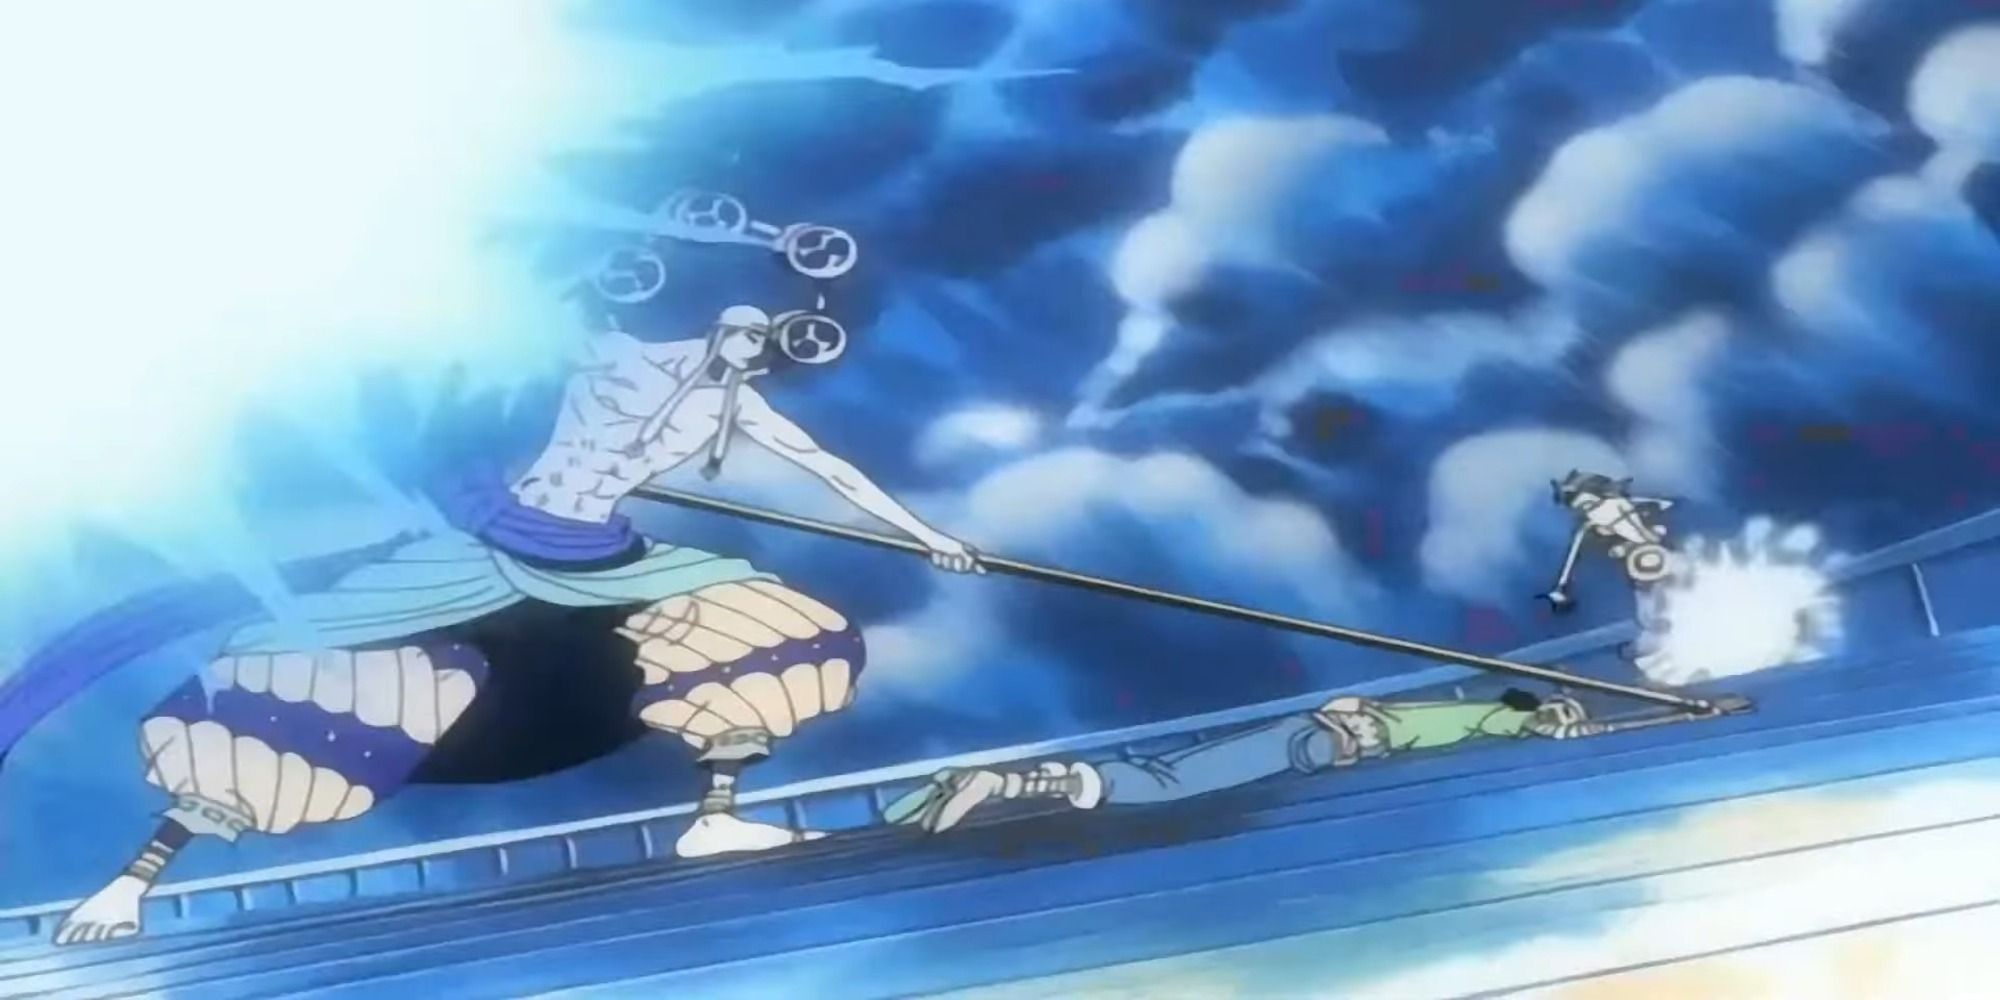 Enel in battle in One Piece